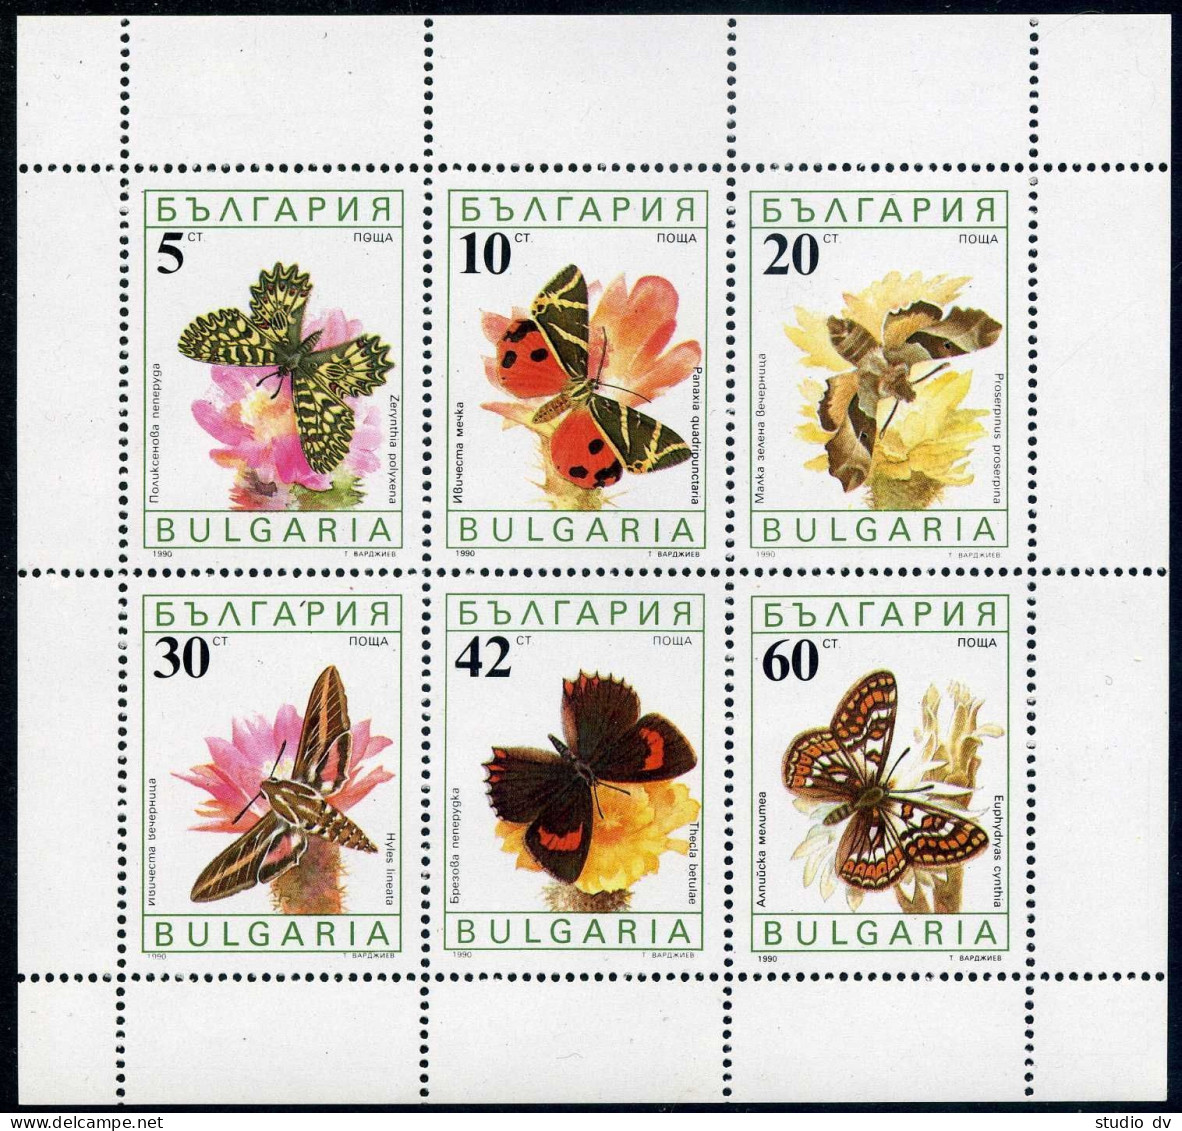 Bulgaria 3556a Sheet,MNH.Michel 3852-3857 Klb. Butterflies And Flowers 1990. - Neufs